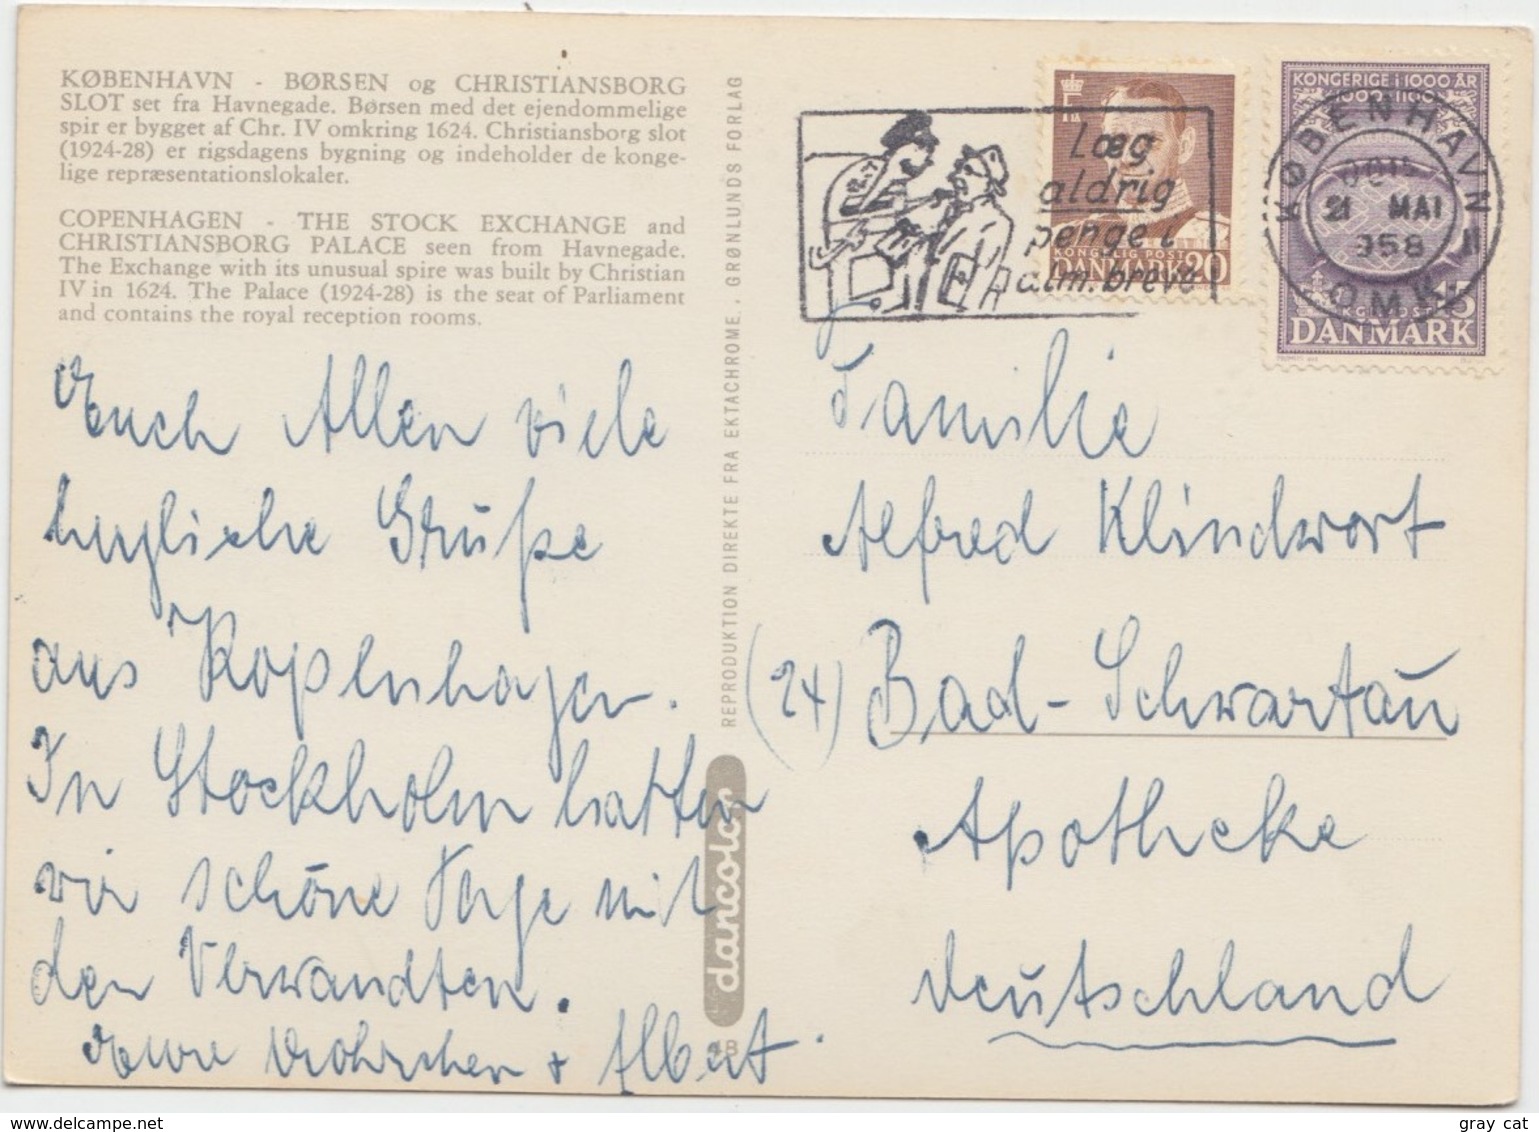 KOBENHAVN, COPENHAGEN, BORSEN Og CHRISTIANSBORG SLOT, The Stock Exchange, 1958 Used Postcard [22197] - Denmark